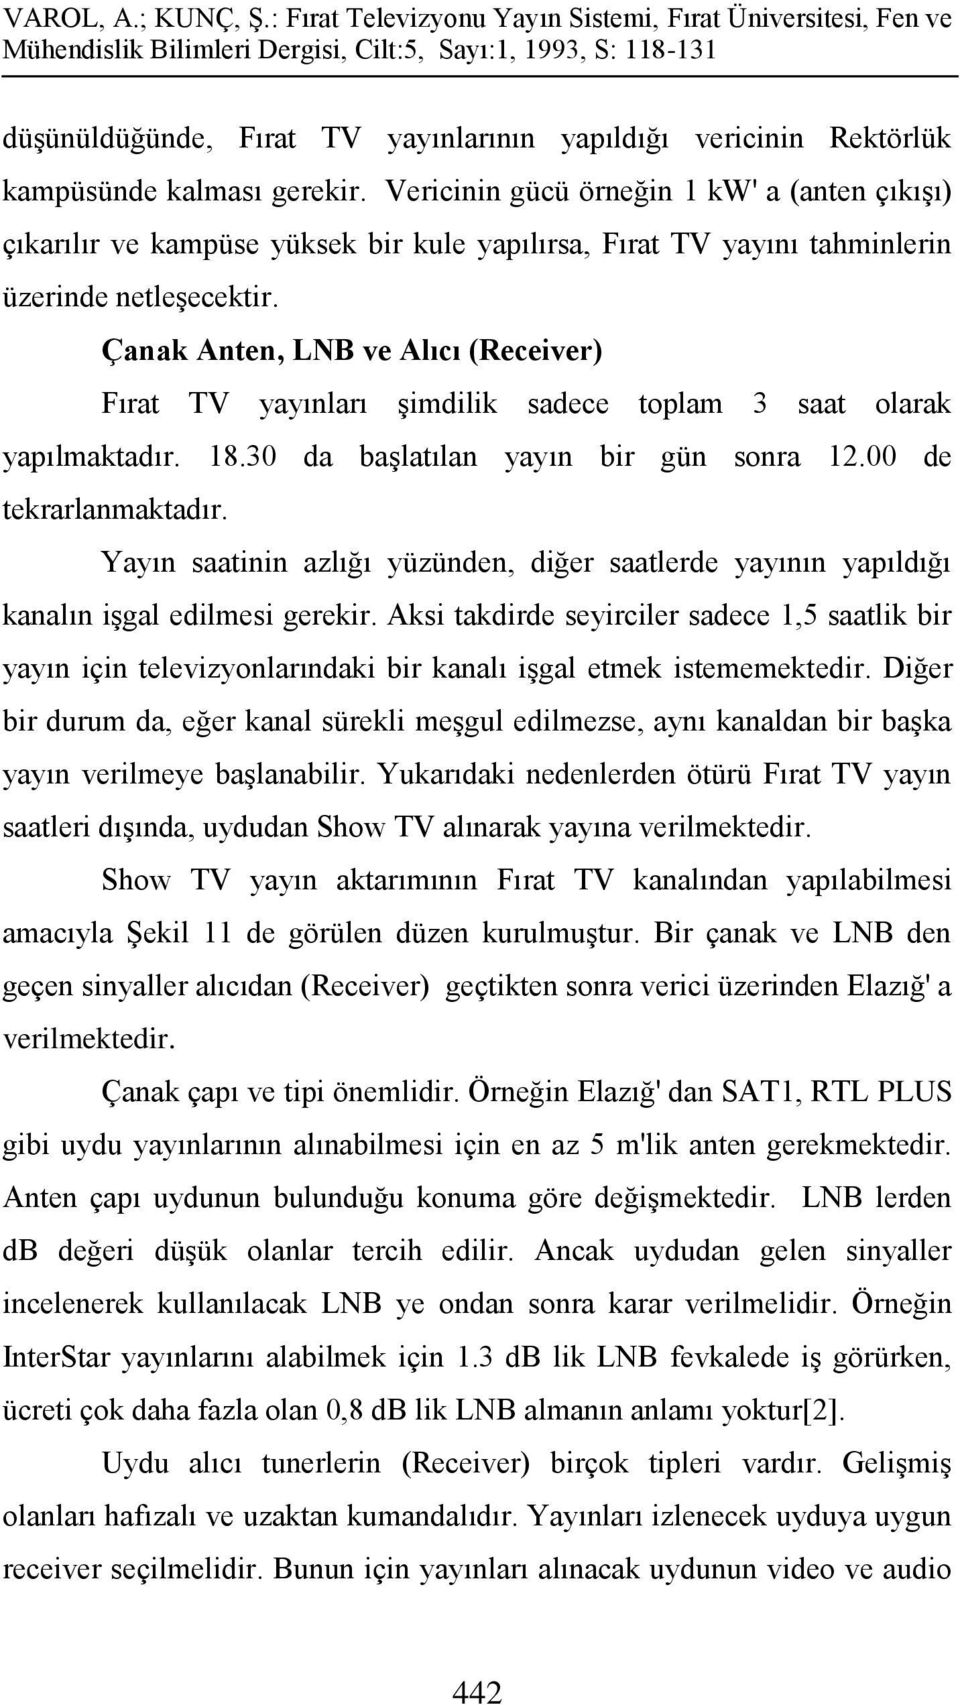 Çanak Anten, LNB ve Alıcı (Receiver) Fırat TV yayınları şimdilik sadece toplam 3 saat olarak yapılmaktadır. 18.30 da başlatılan yayın bir gün sonra 12.00 de tekrarlanmaktadır.